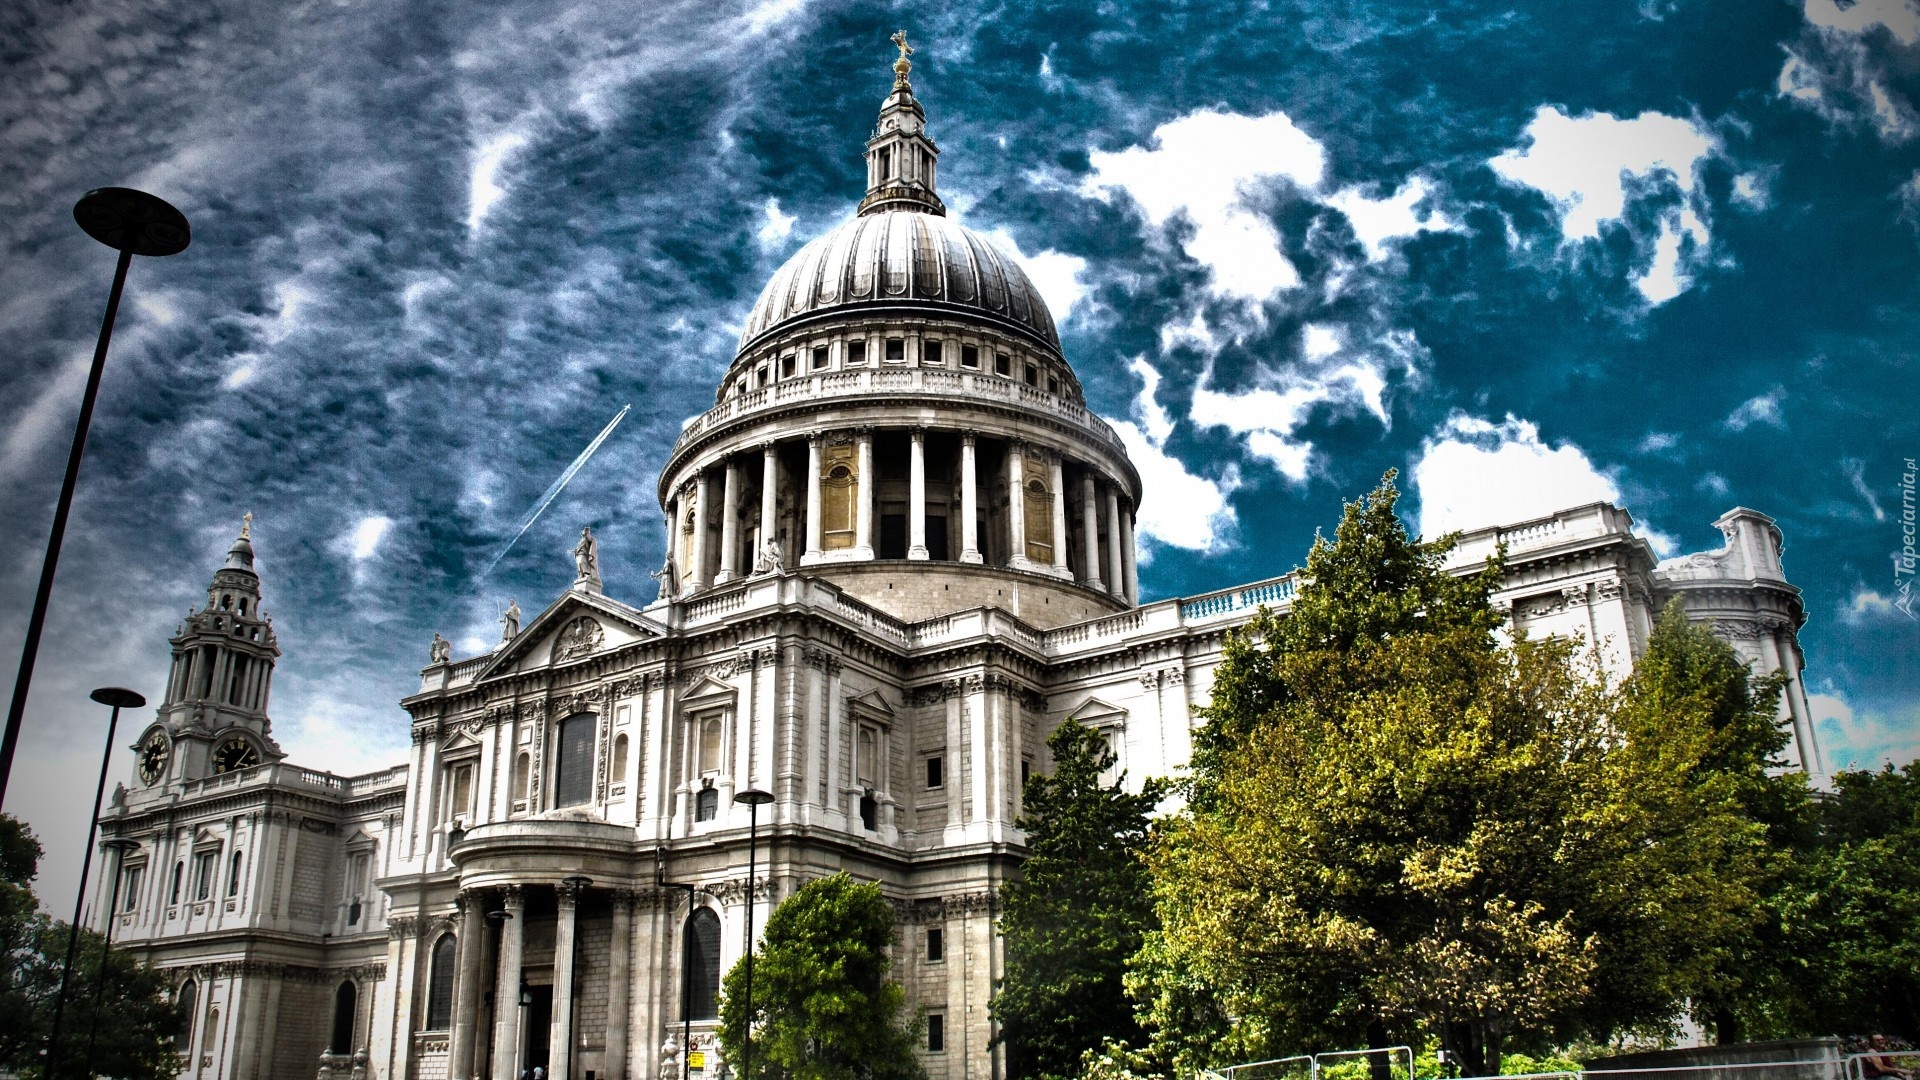 Katedra, Św. Pawła, Londyn